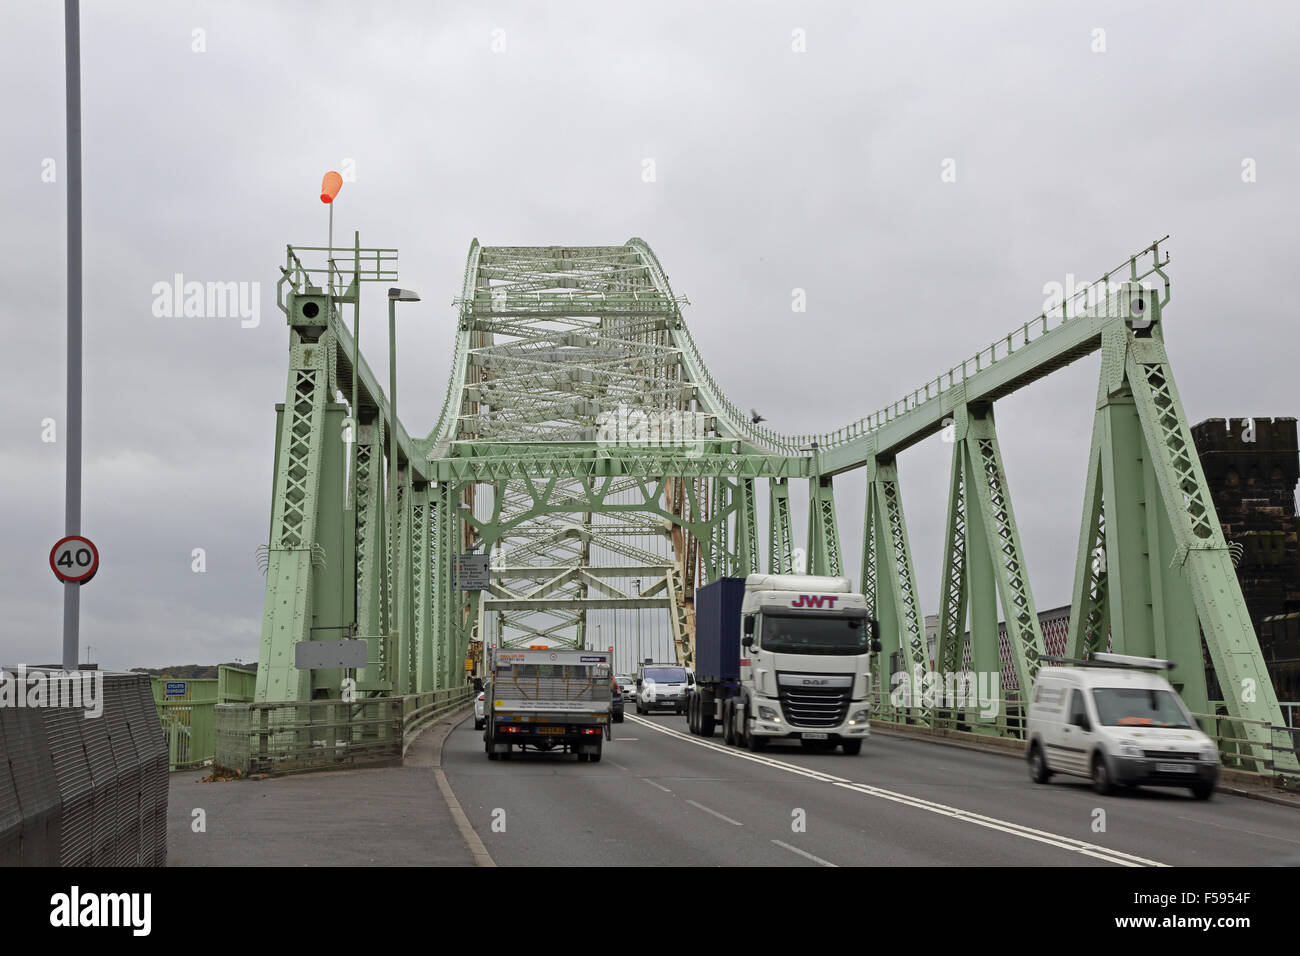 Datenverkehr über die silberne Jubiläum-Brücke über den Fluss Mersey in Runcorn, Großbritannien. Brücke von Norden betrachtet. Stockfoto